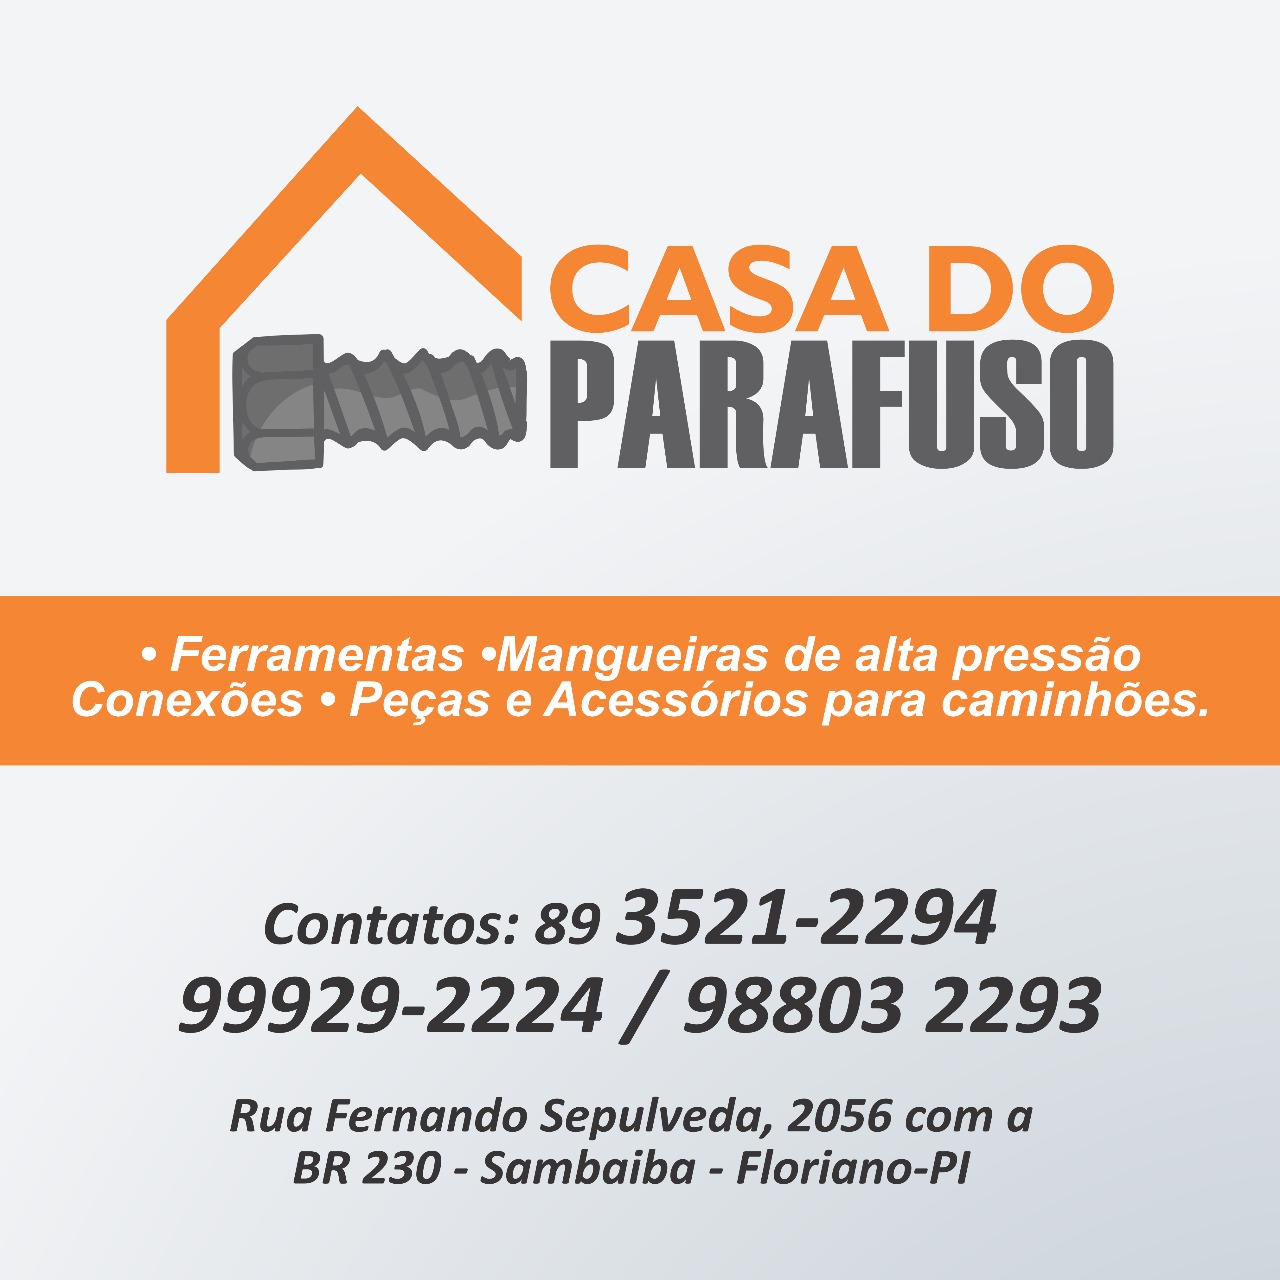 CASA DO PARAFUSO - Mangueira Automotiva - Floriano, PI